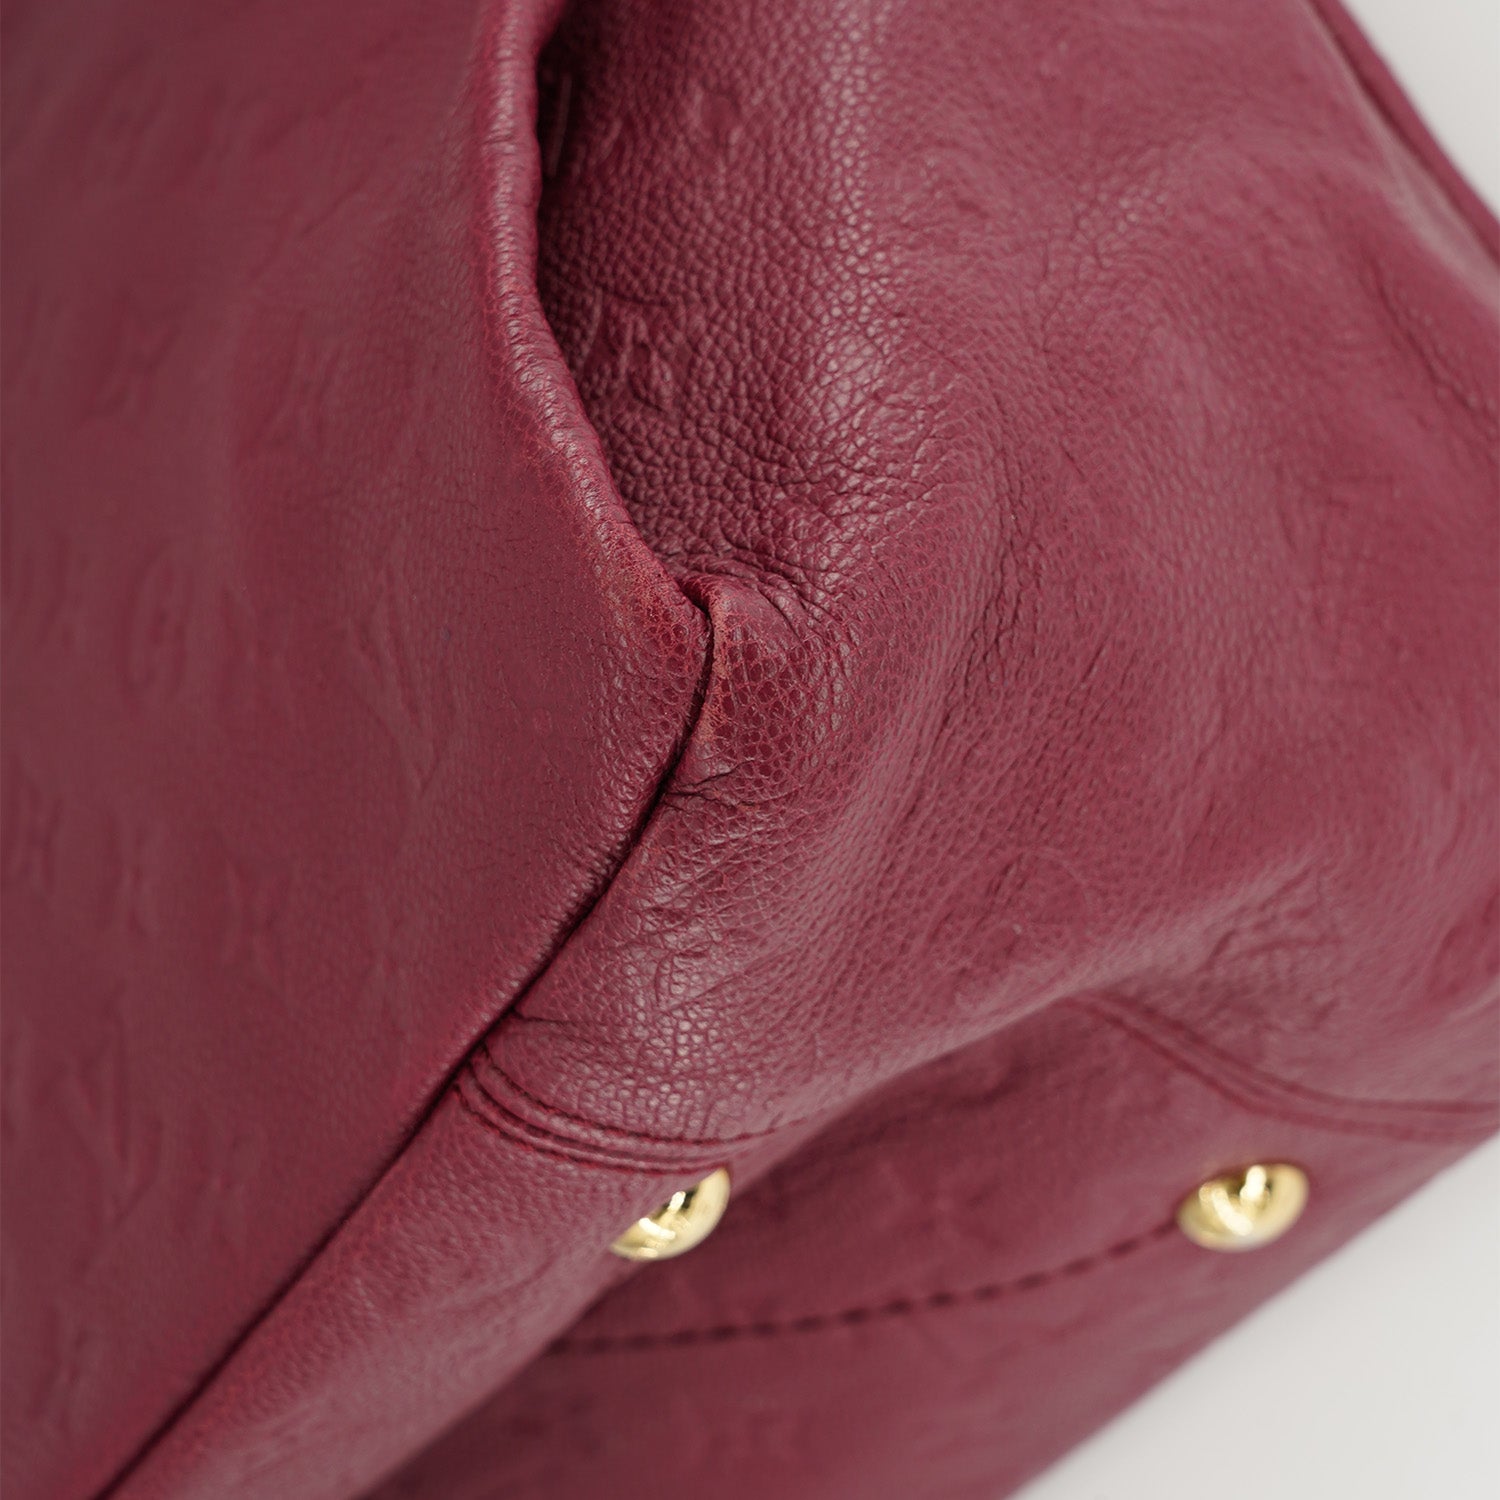 Louis Vuitton Pebble Leather Top Handle Bag Purple